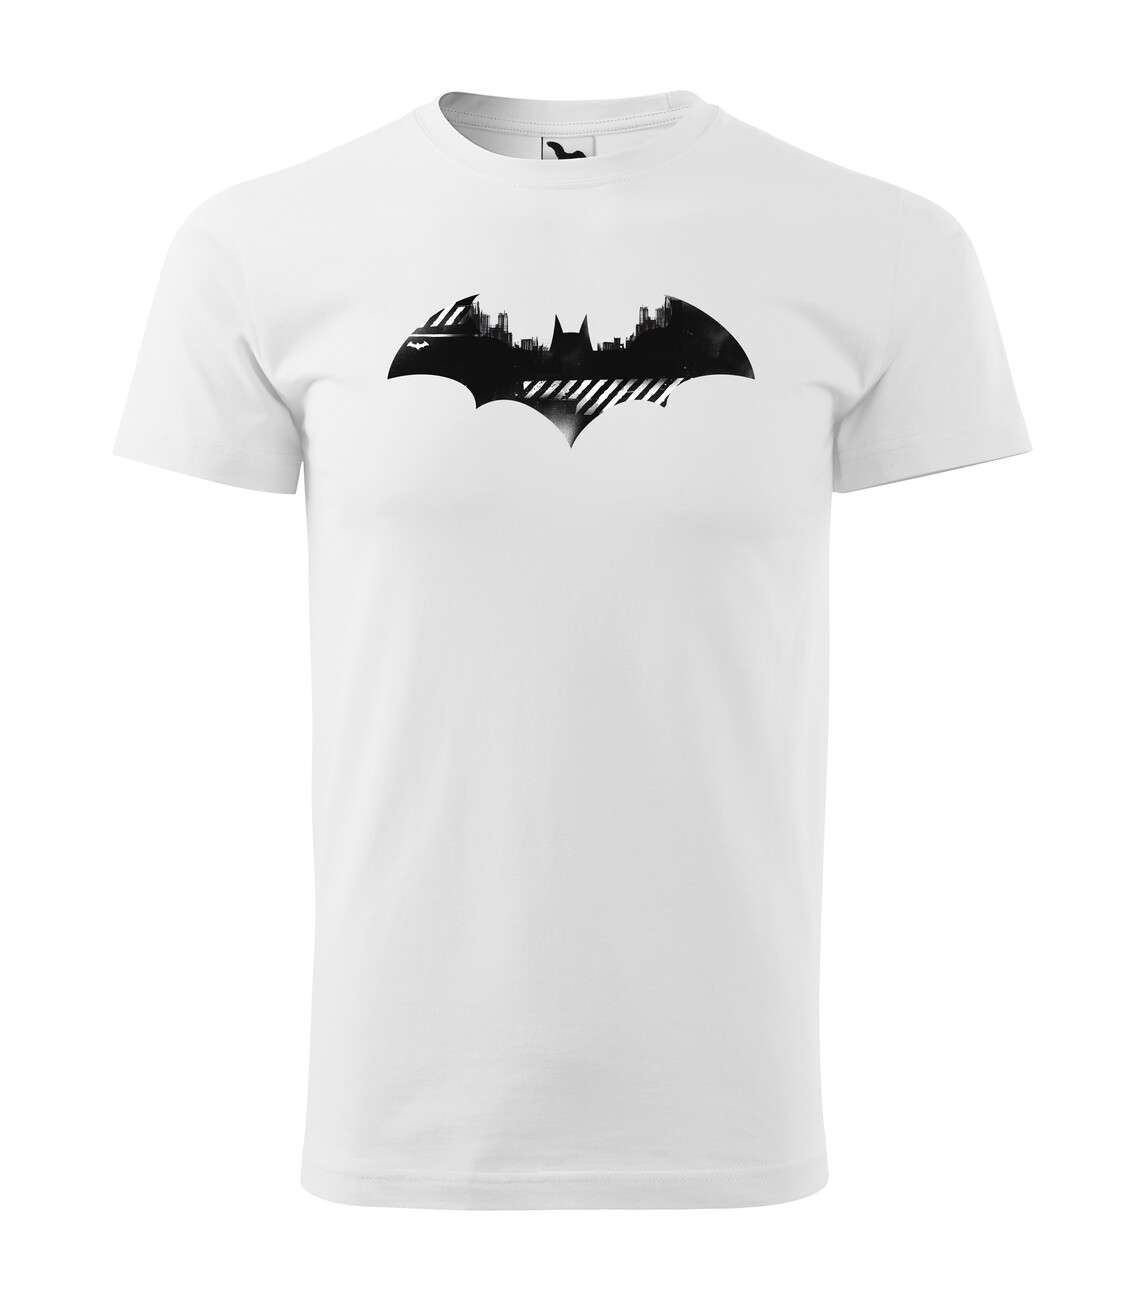 Stedord alarm Apparatet Batman - Minimalistic Logo | Tøj og tilbehør til merchandise fans |  Europosters